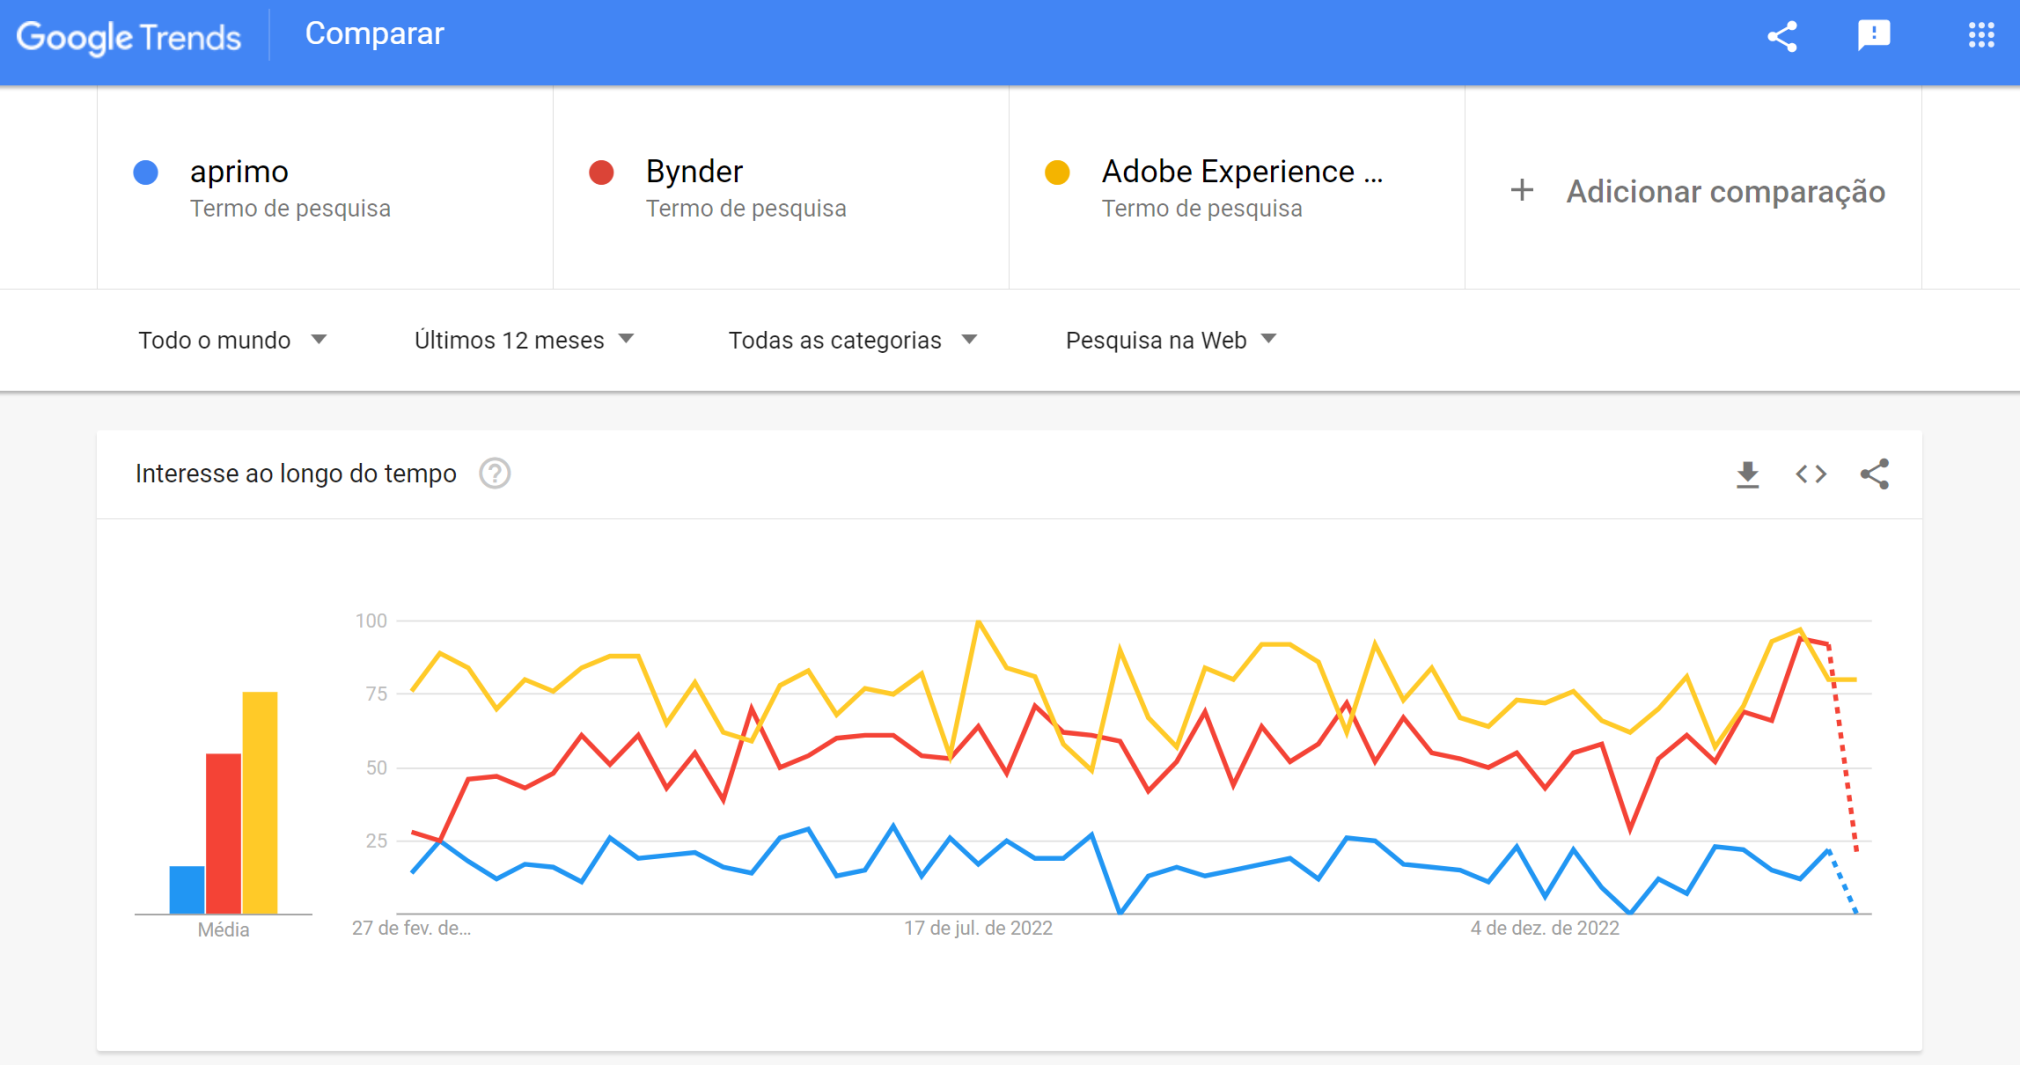 exemplo de comparação no google trends